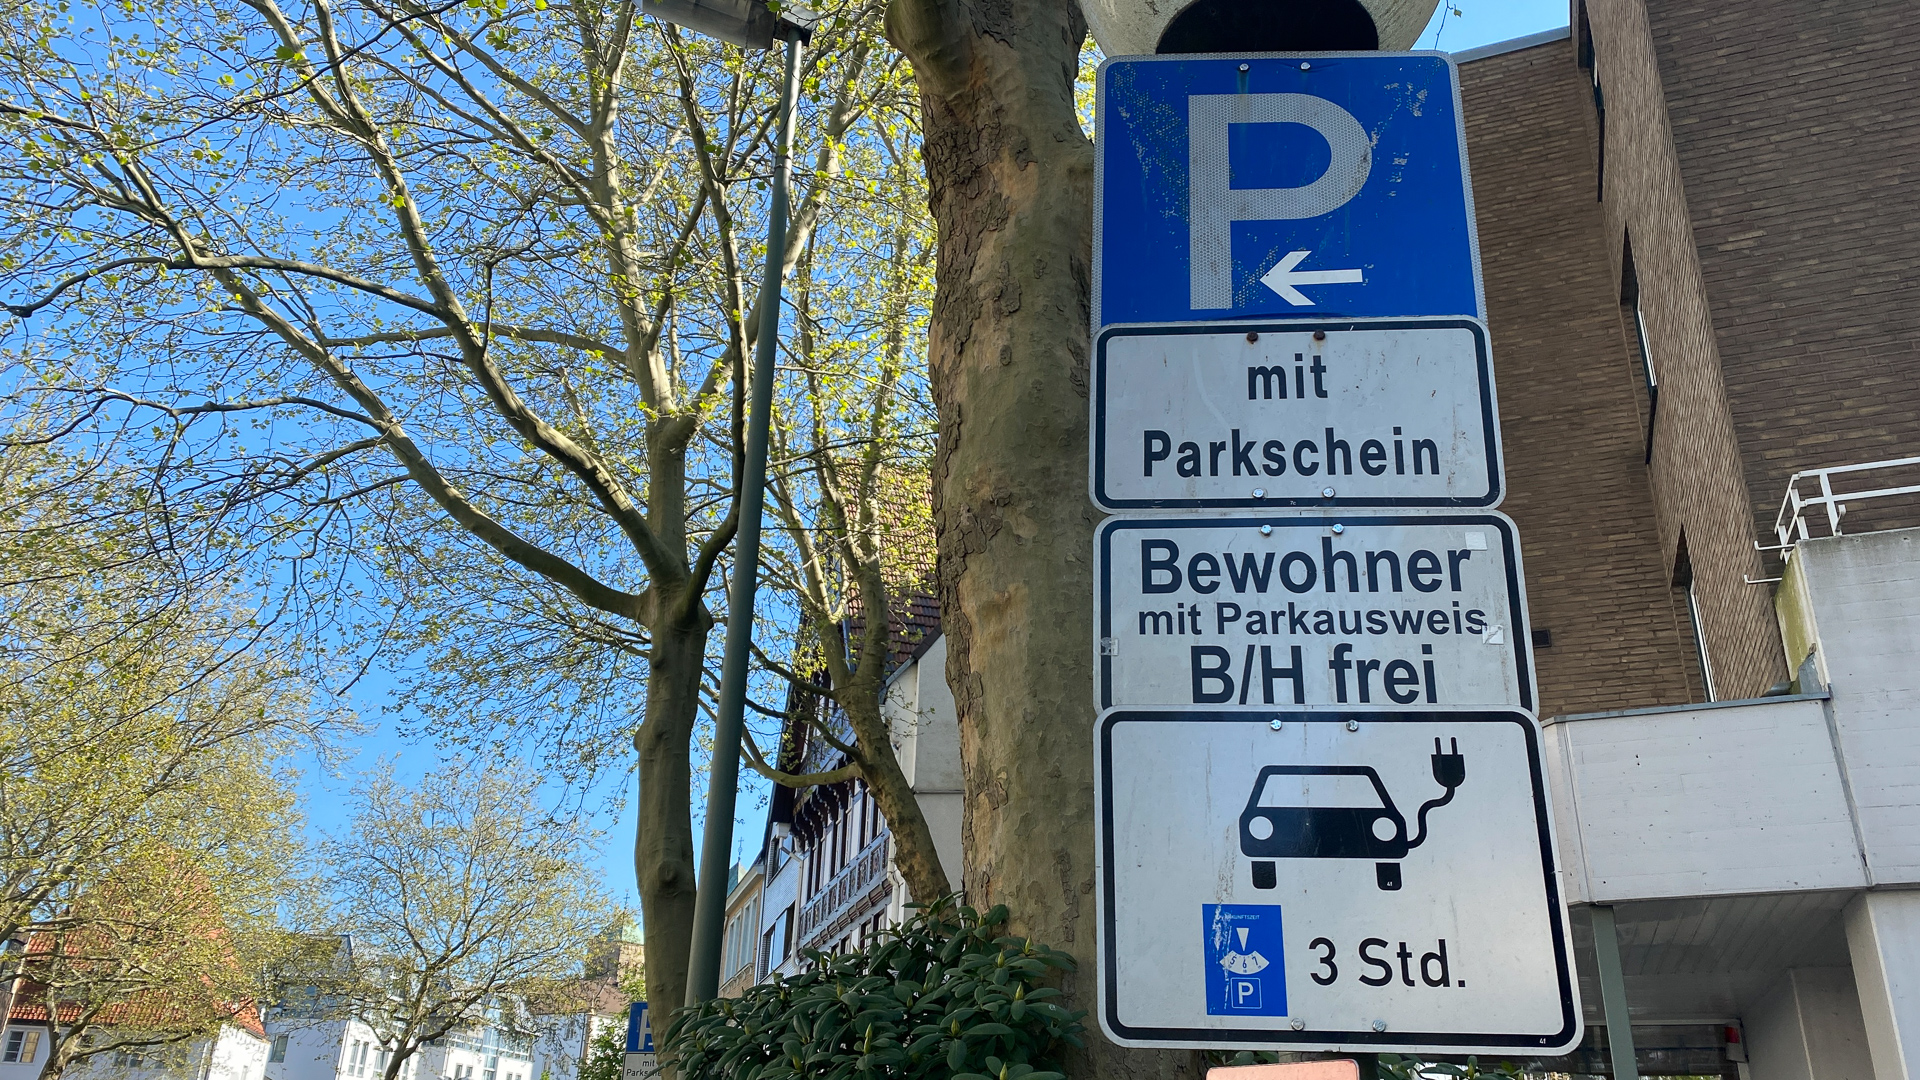 https://www.gutschild.de/blog/wp-content/uploads/2020/05/Elektroauto-Parkplatz-nur-mit-E-Kennzeichen-Bussgeld-Falsch-Parken-Gutschild-KFZ-Ratgeber-02.jpg